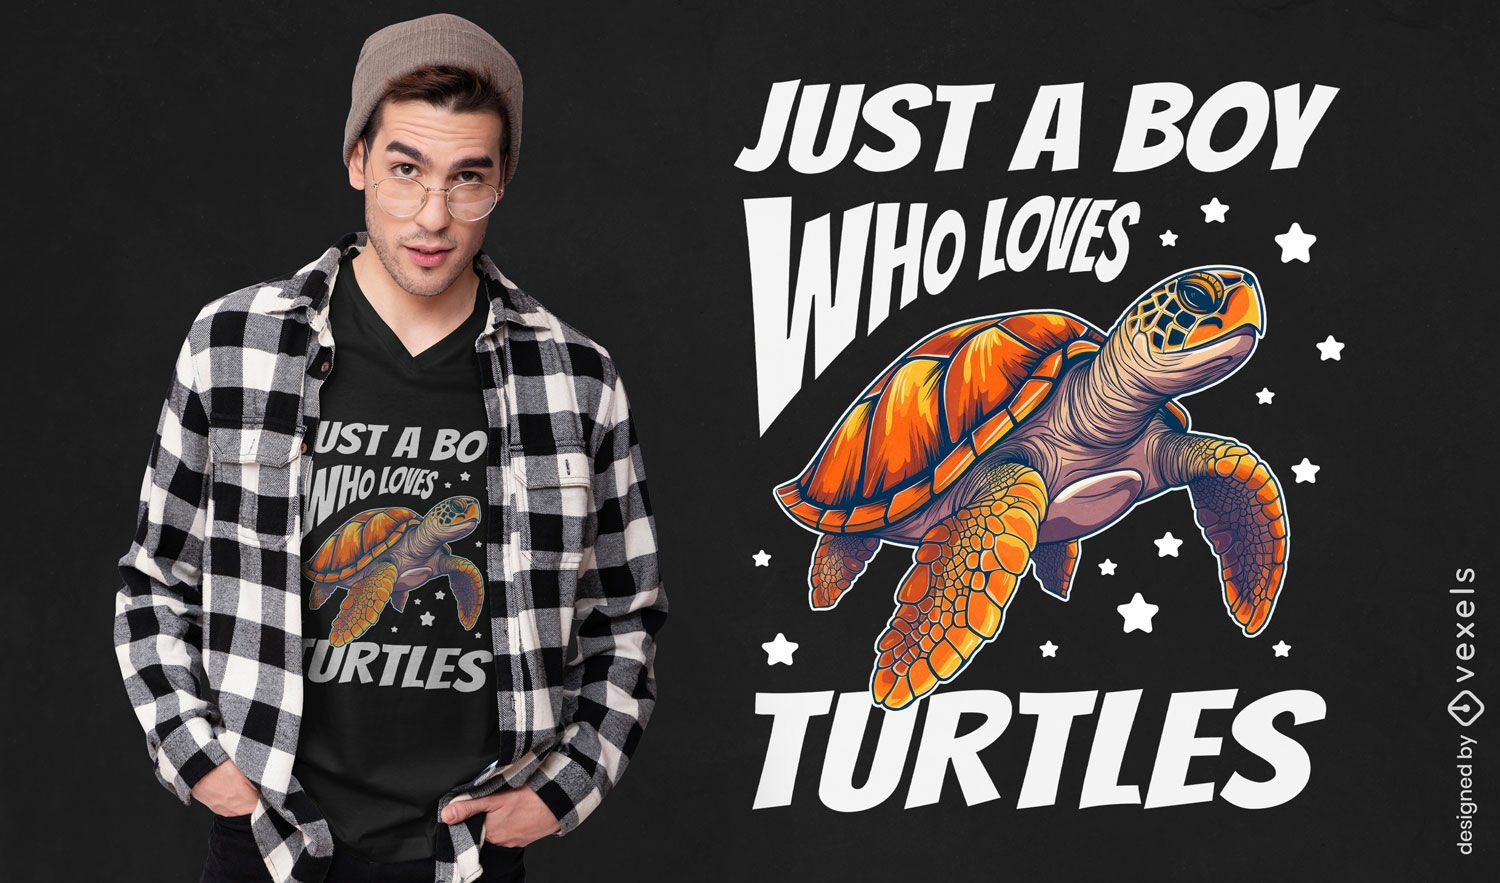 Diseño de camiseta entusiasta de las tortugas.